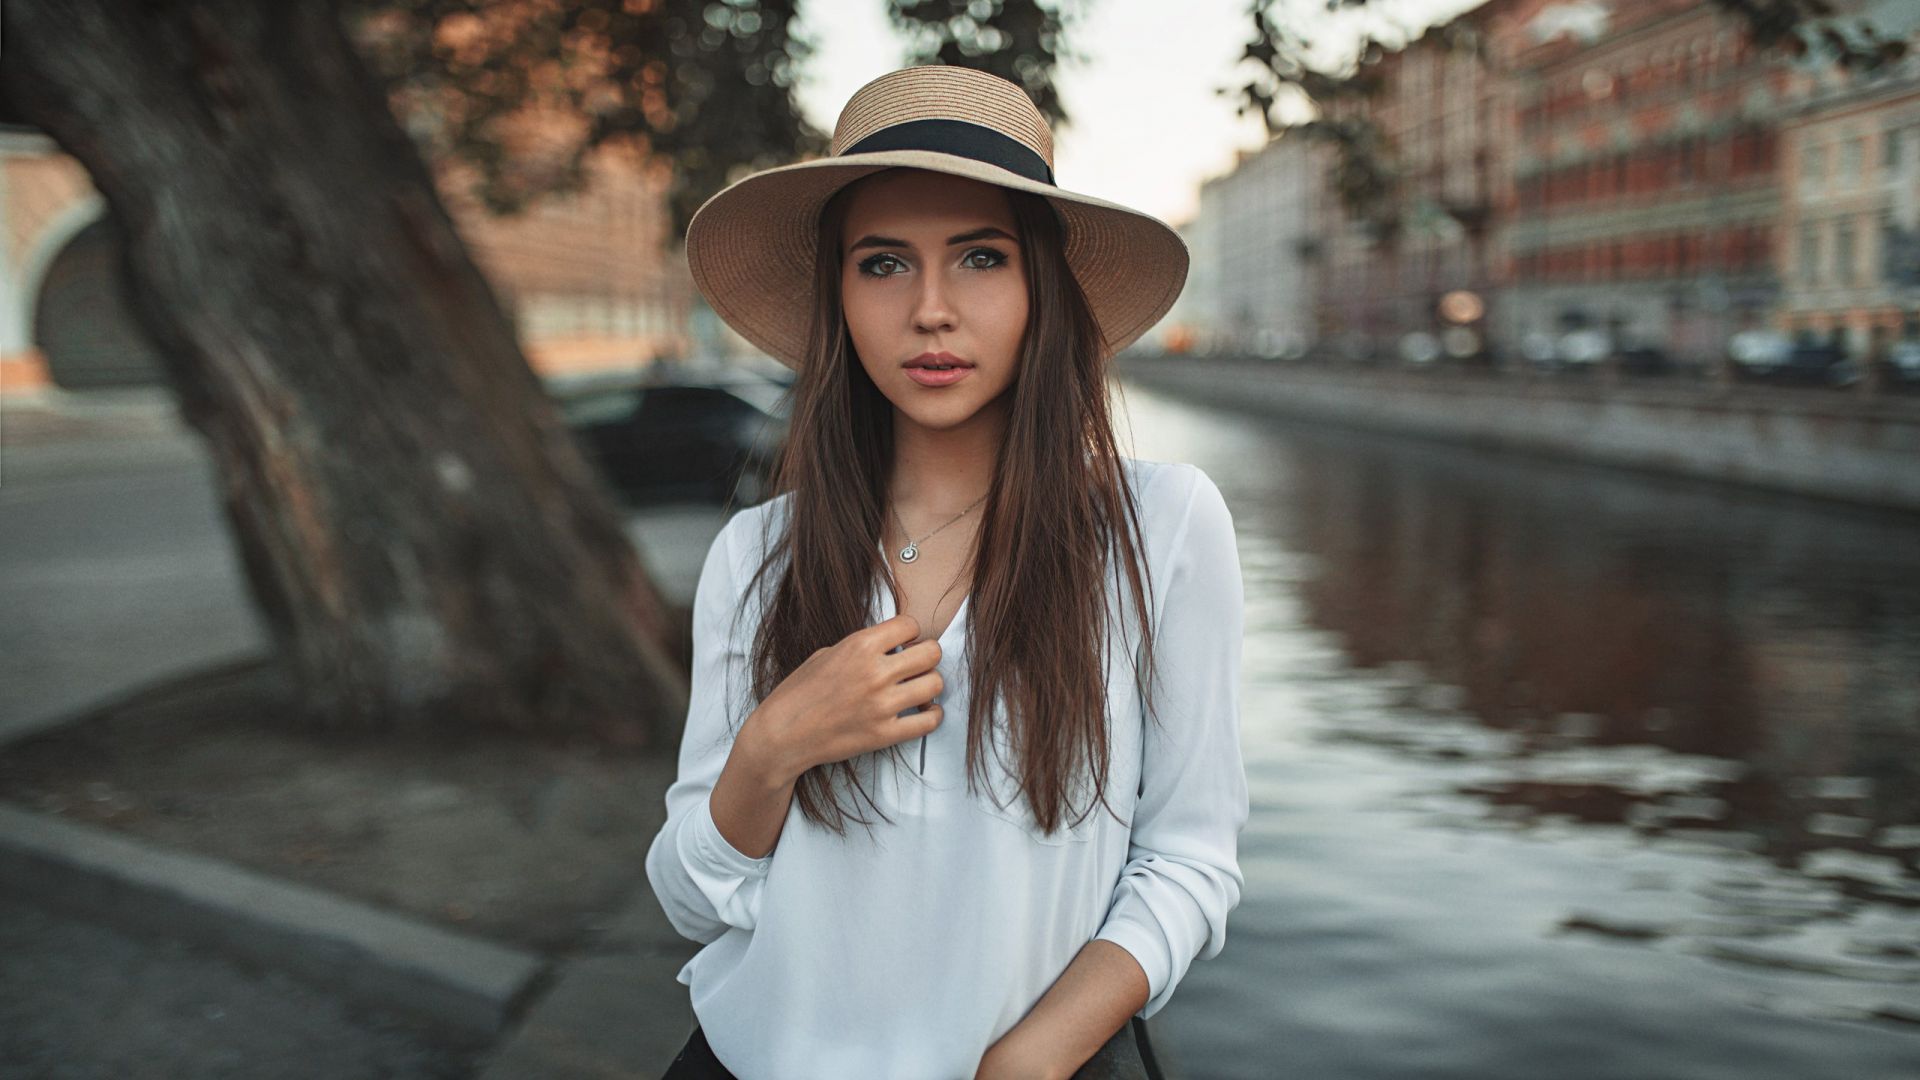 Wallpaper Brunette, hat, white top, girl model, outdoor